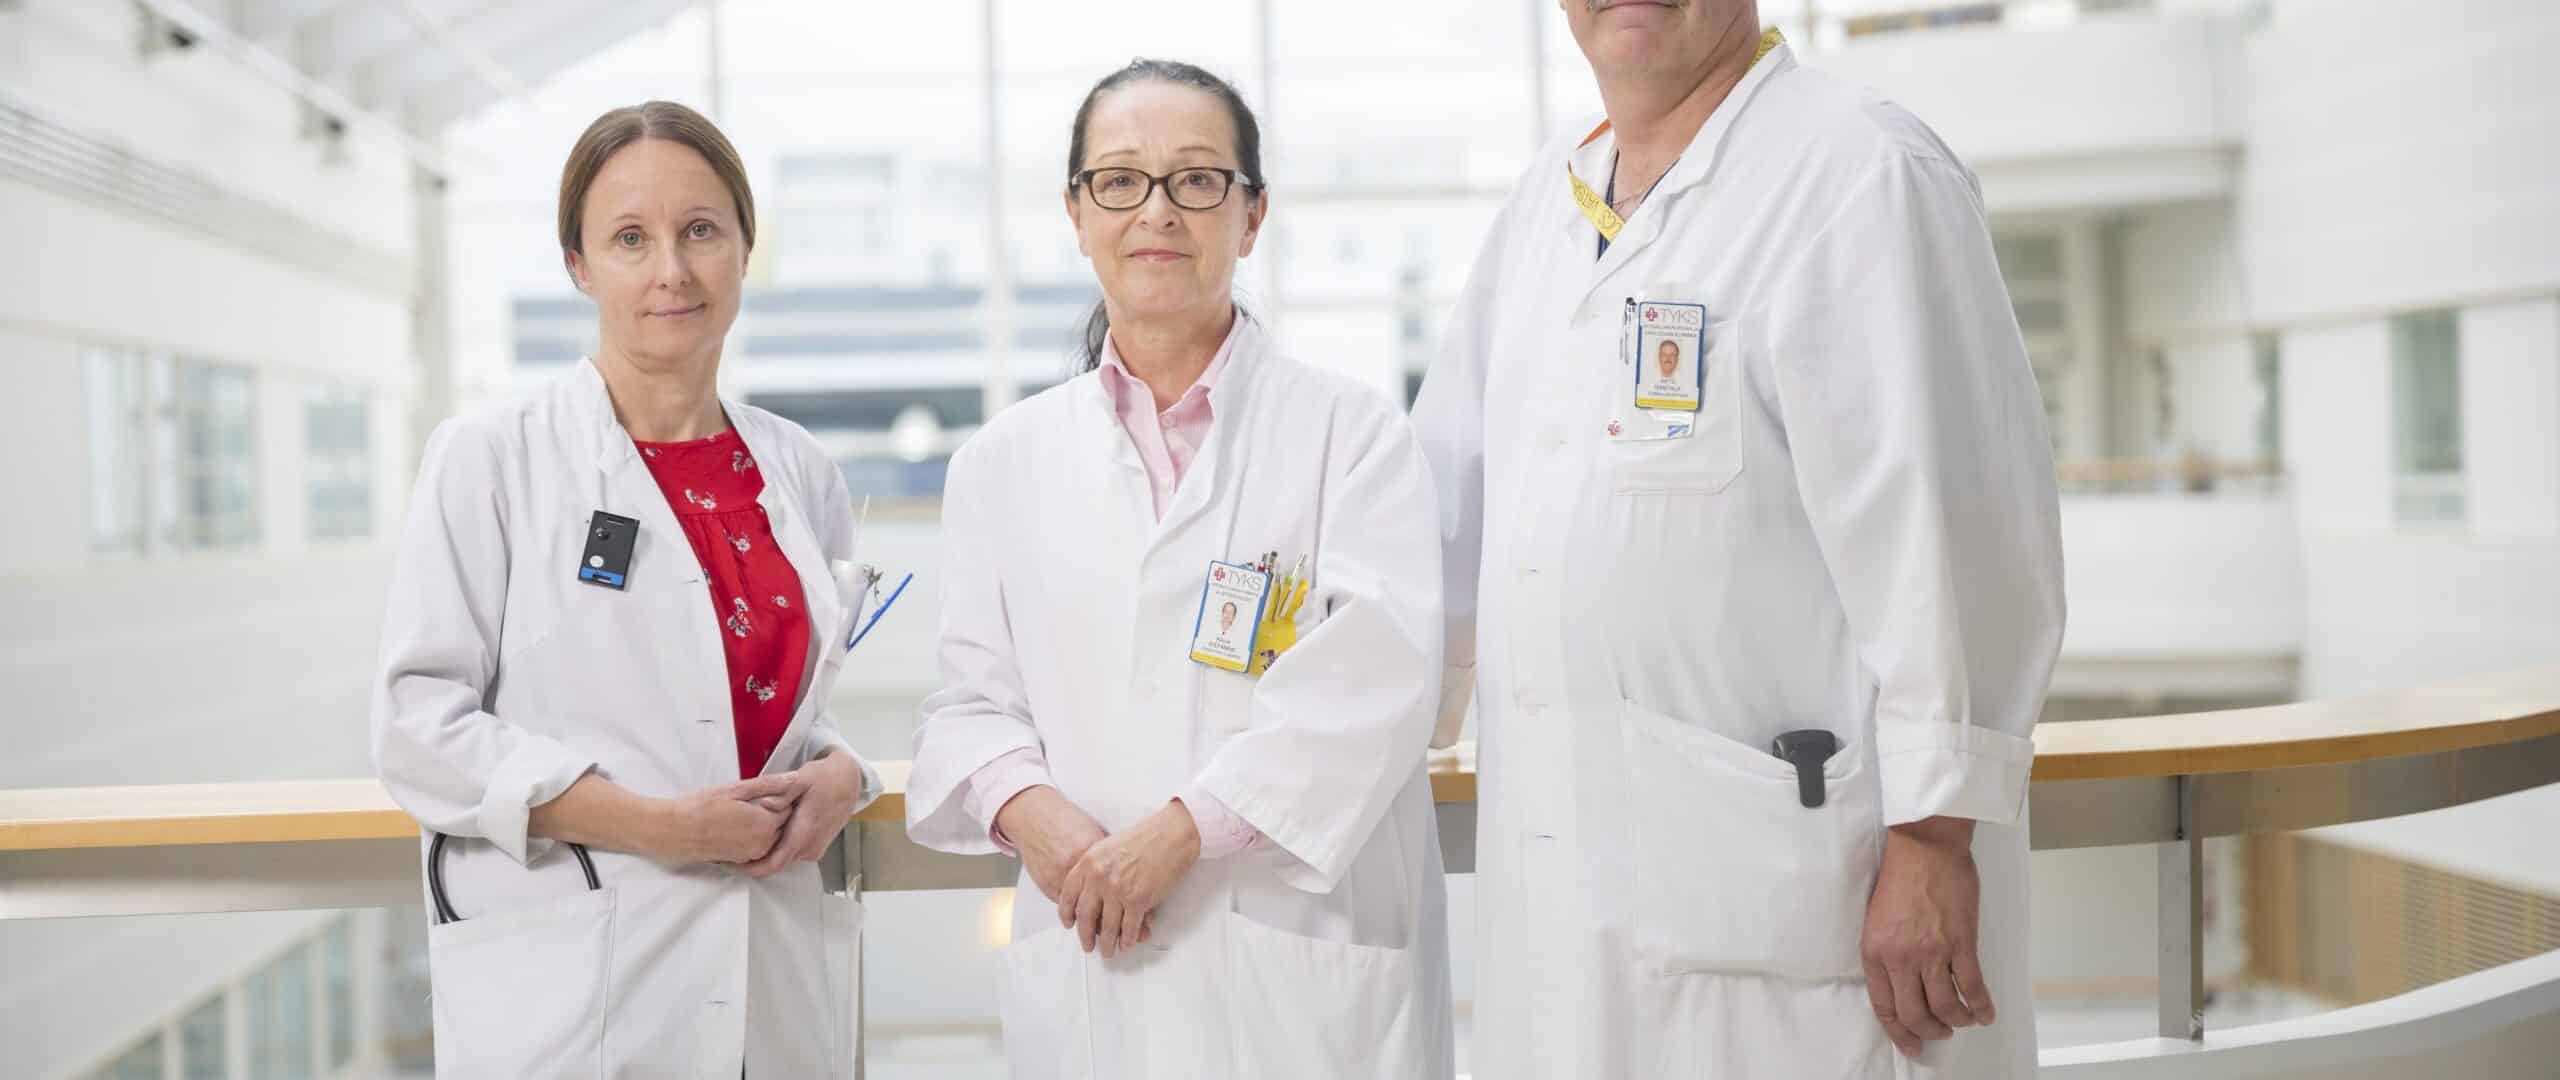 Arto Rantala, Annika Ålgars ja Raija Ristamäki kuvattuna sairaalan aulassa.